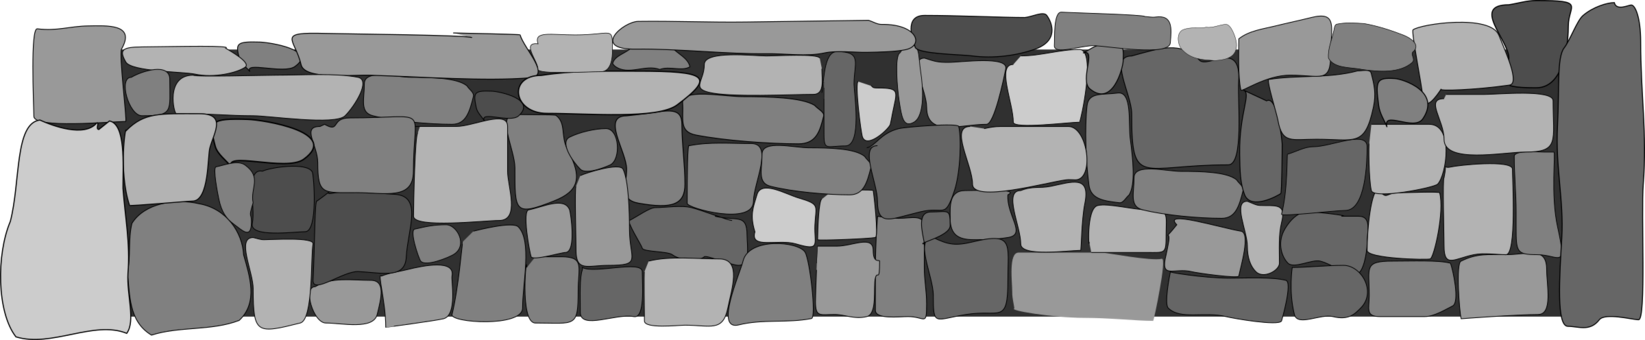 Brick Stone Wall PNG Image